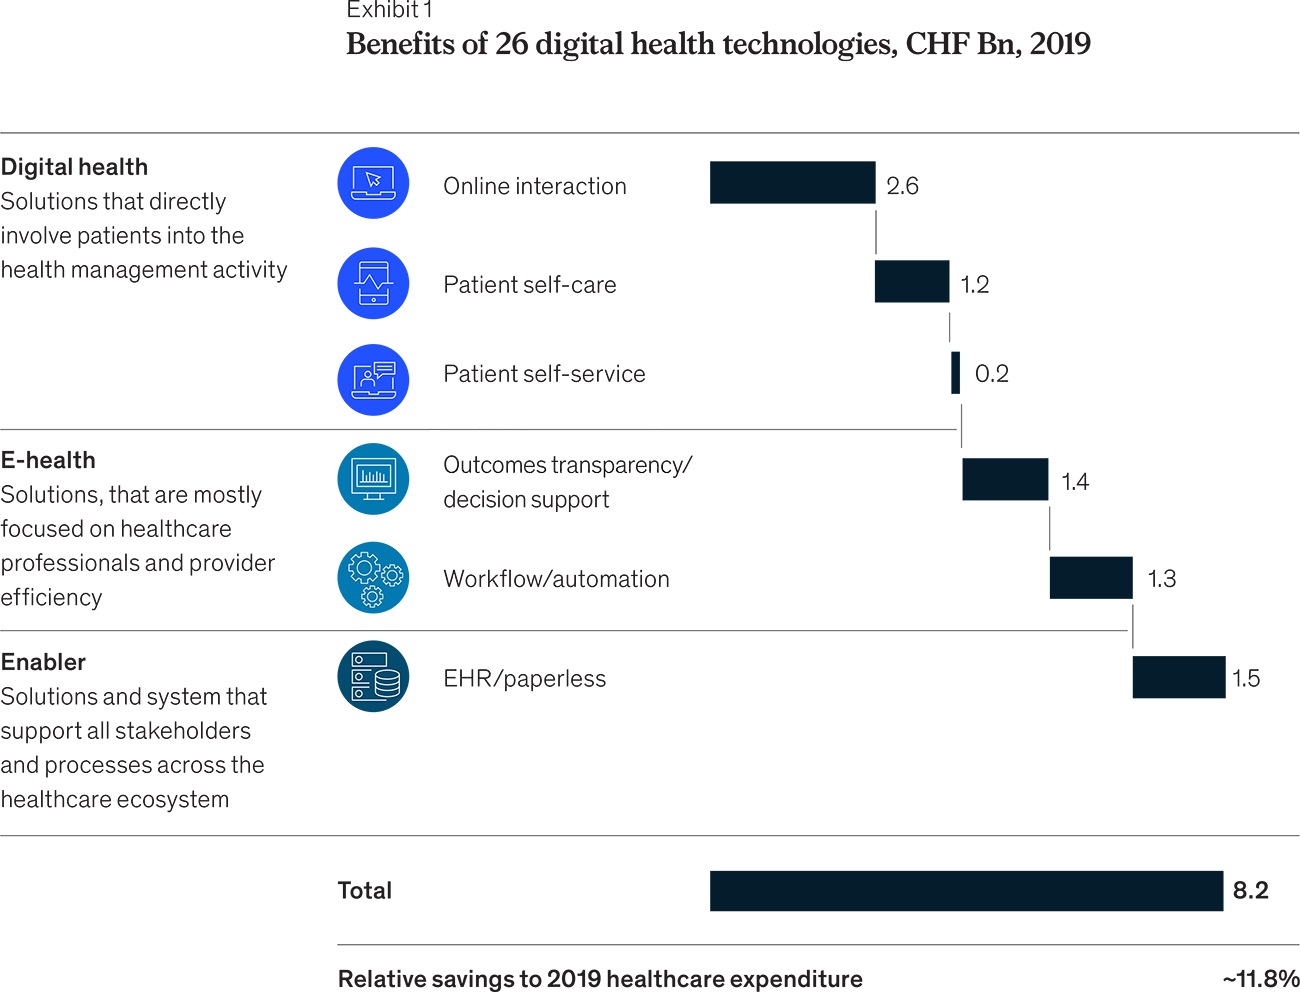 Exhibit 1 - Benefits of 26 digital health technologies